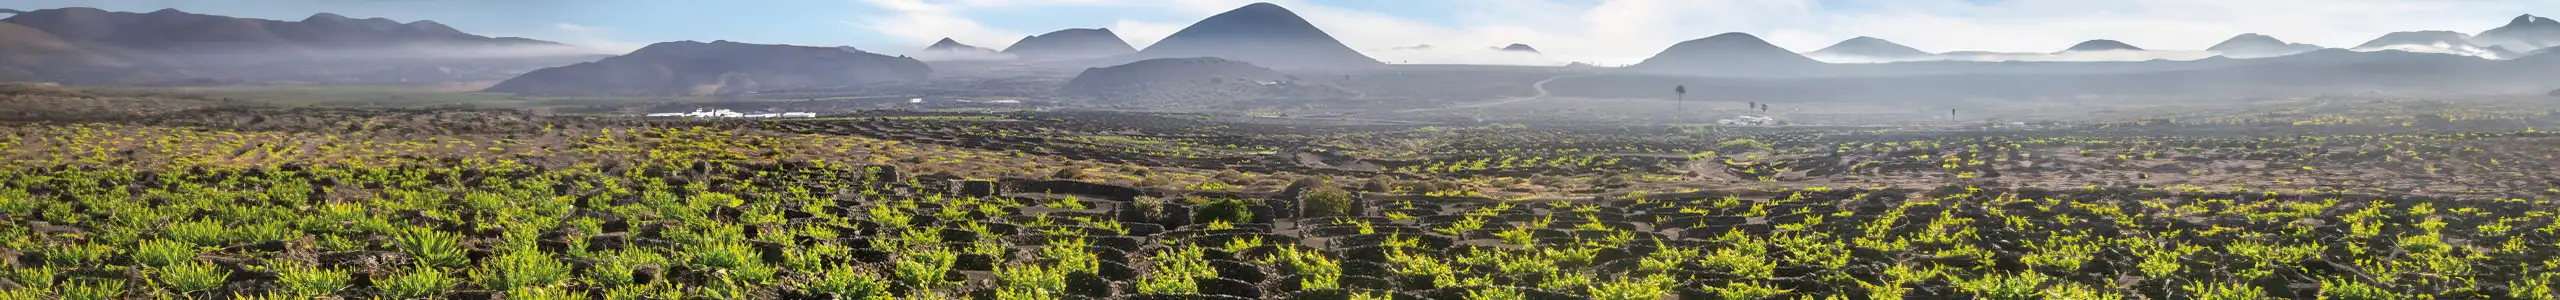 Vulkan-Wein von der kanarischen Insel Lanzarote